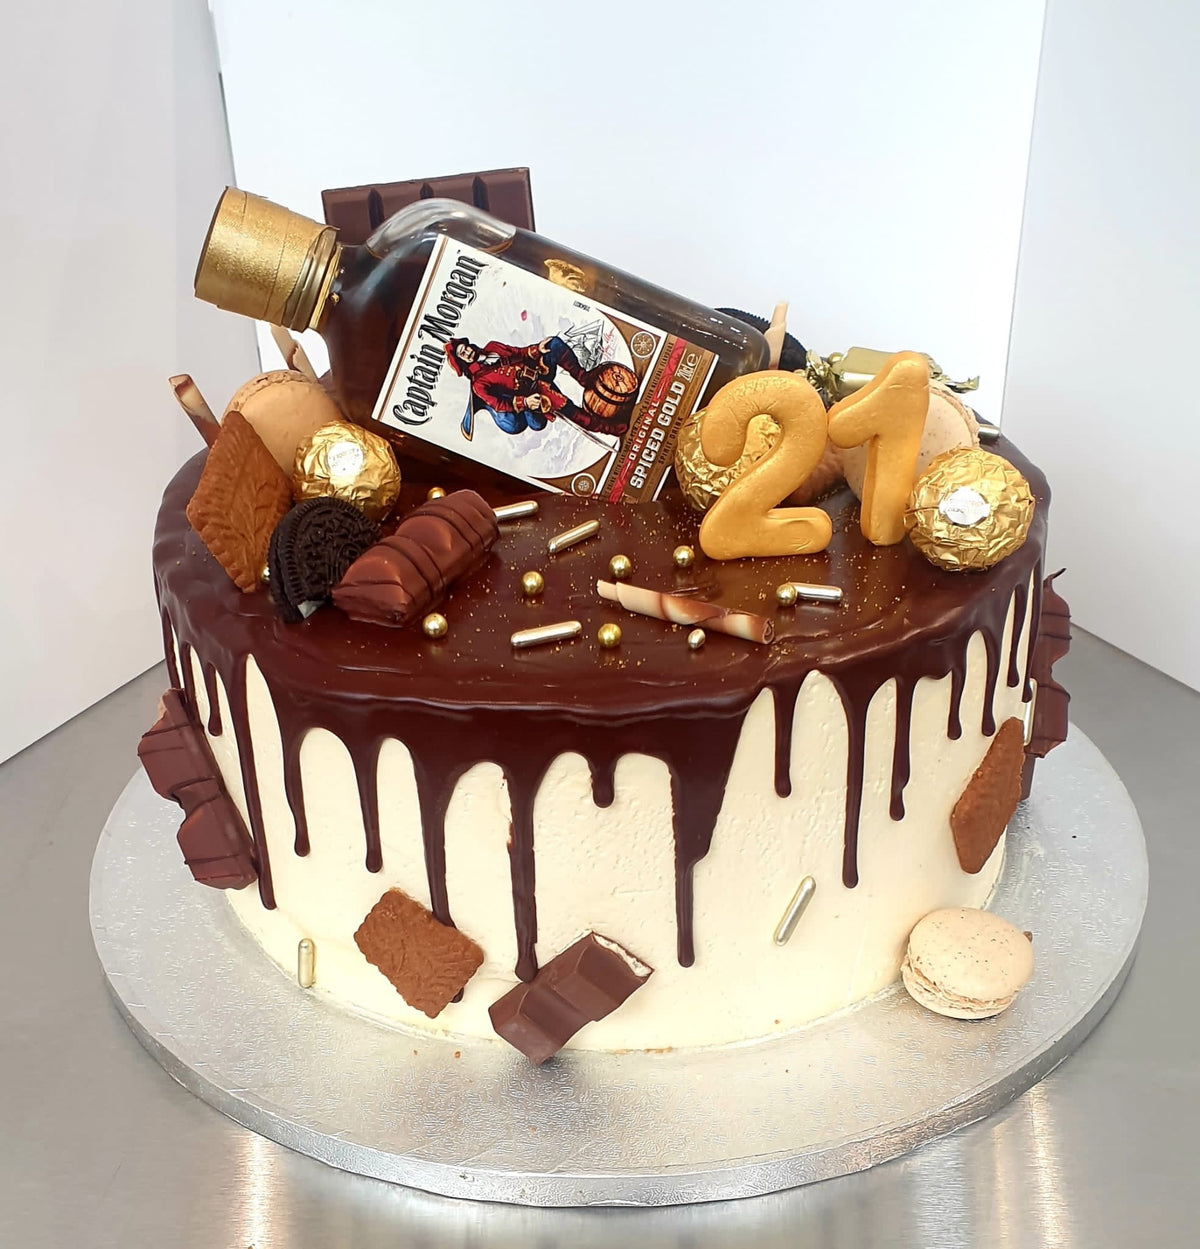 Dublin's Bakery - Eve's Cakes | Birthday Cakes | Wedding Cakes